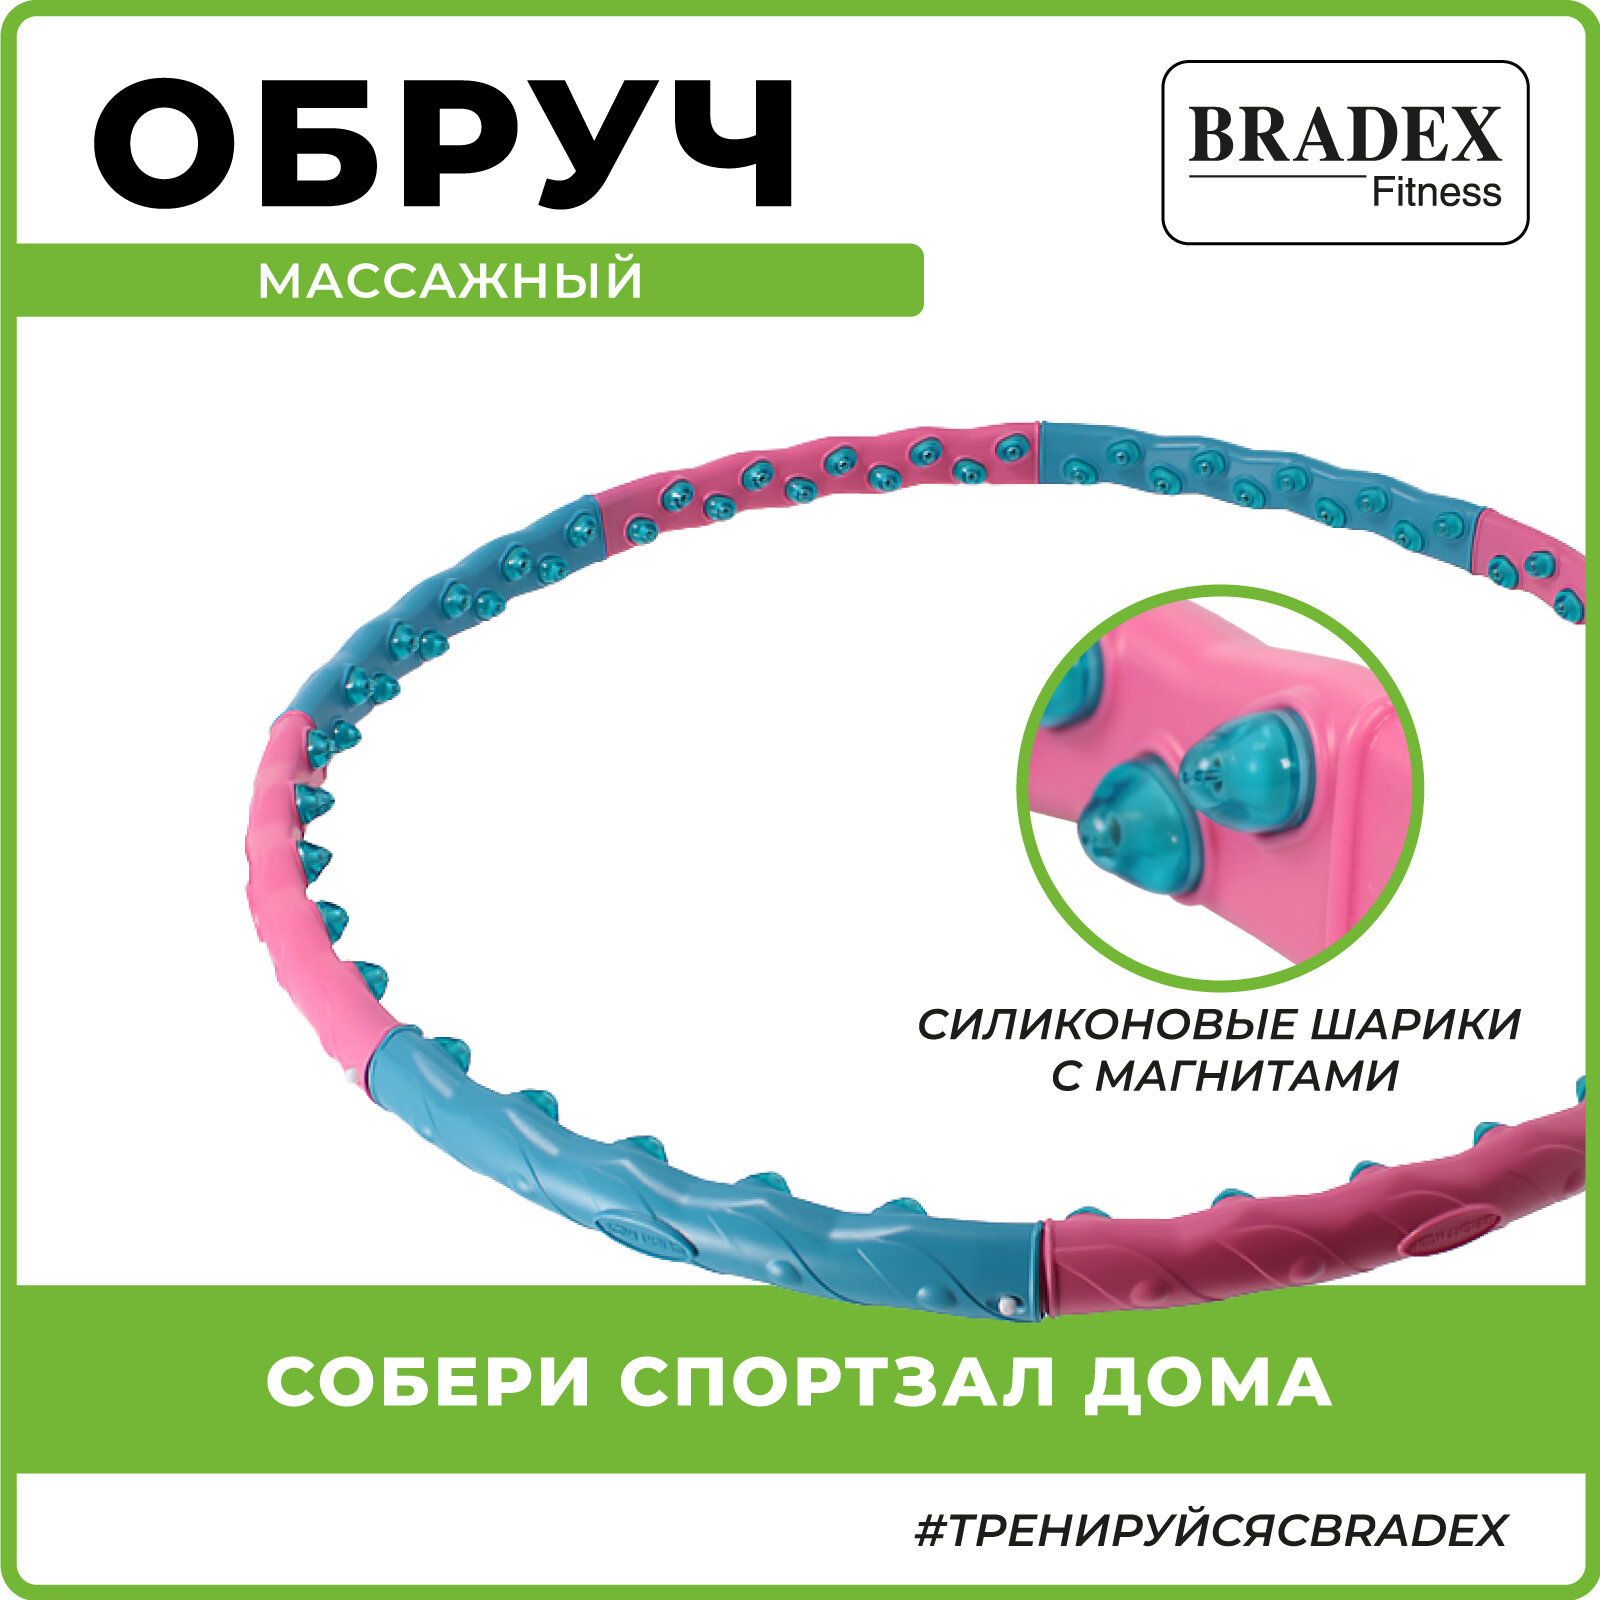 Обруч для похудения BRADEX, массажный фитнес хулахуп утяжеленный гимнастический разборный, с 80 силиконовыми шариками и магнитами